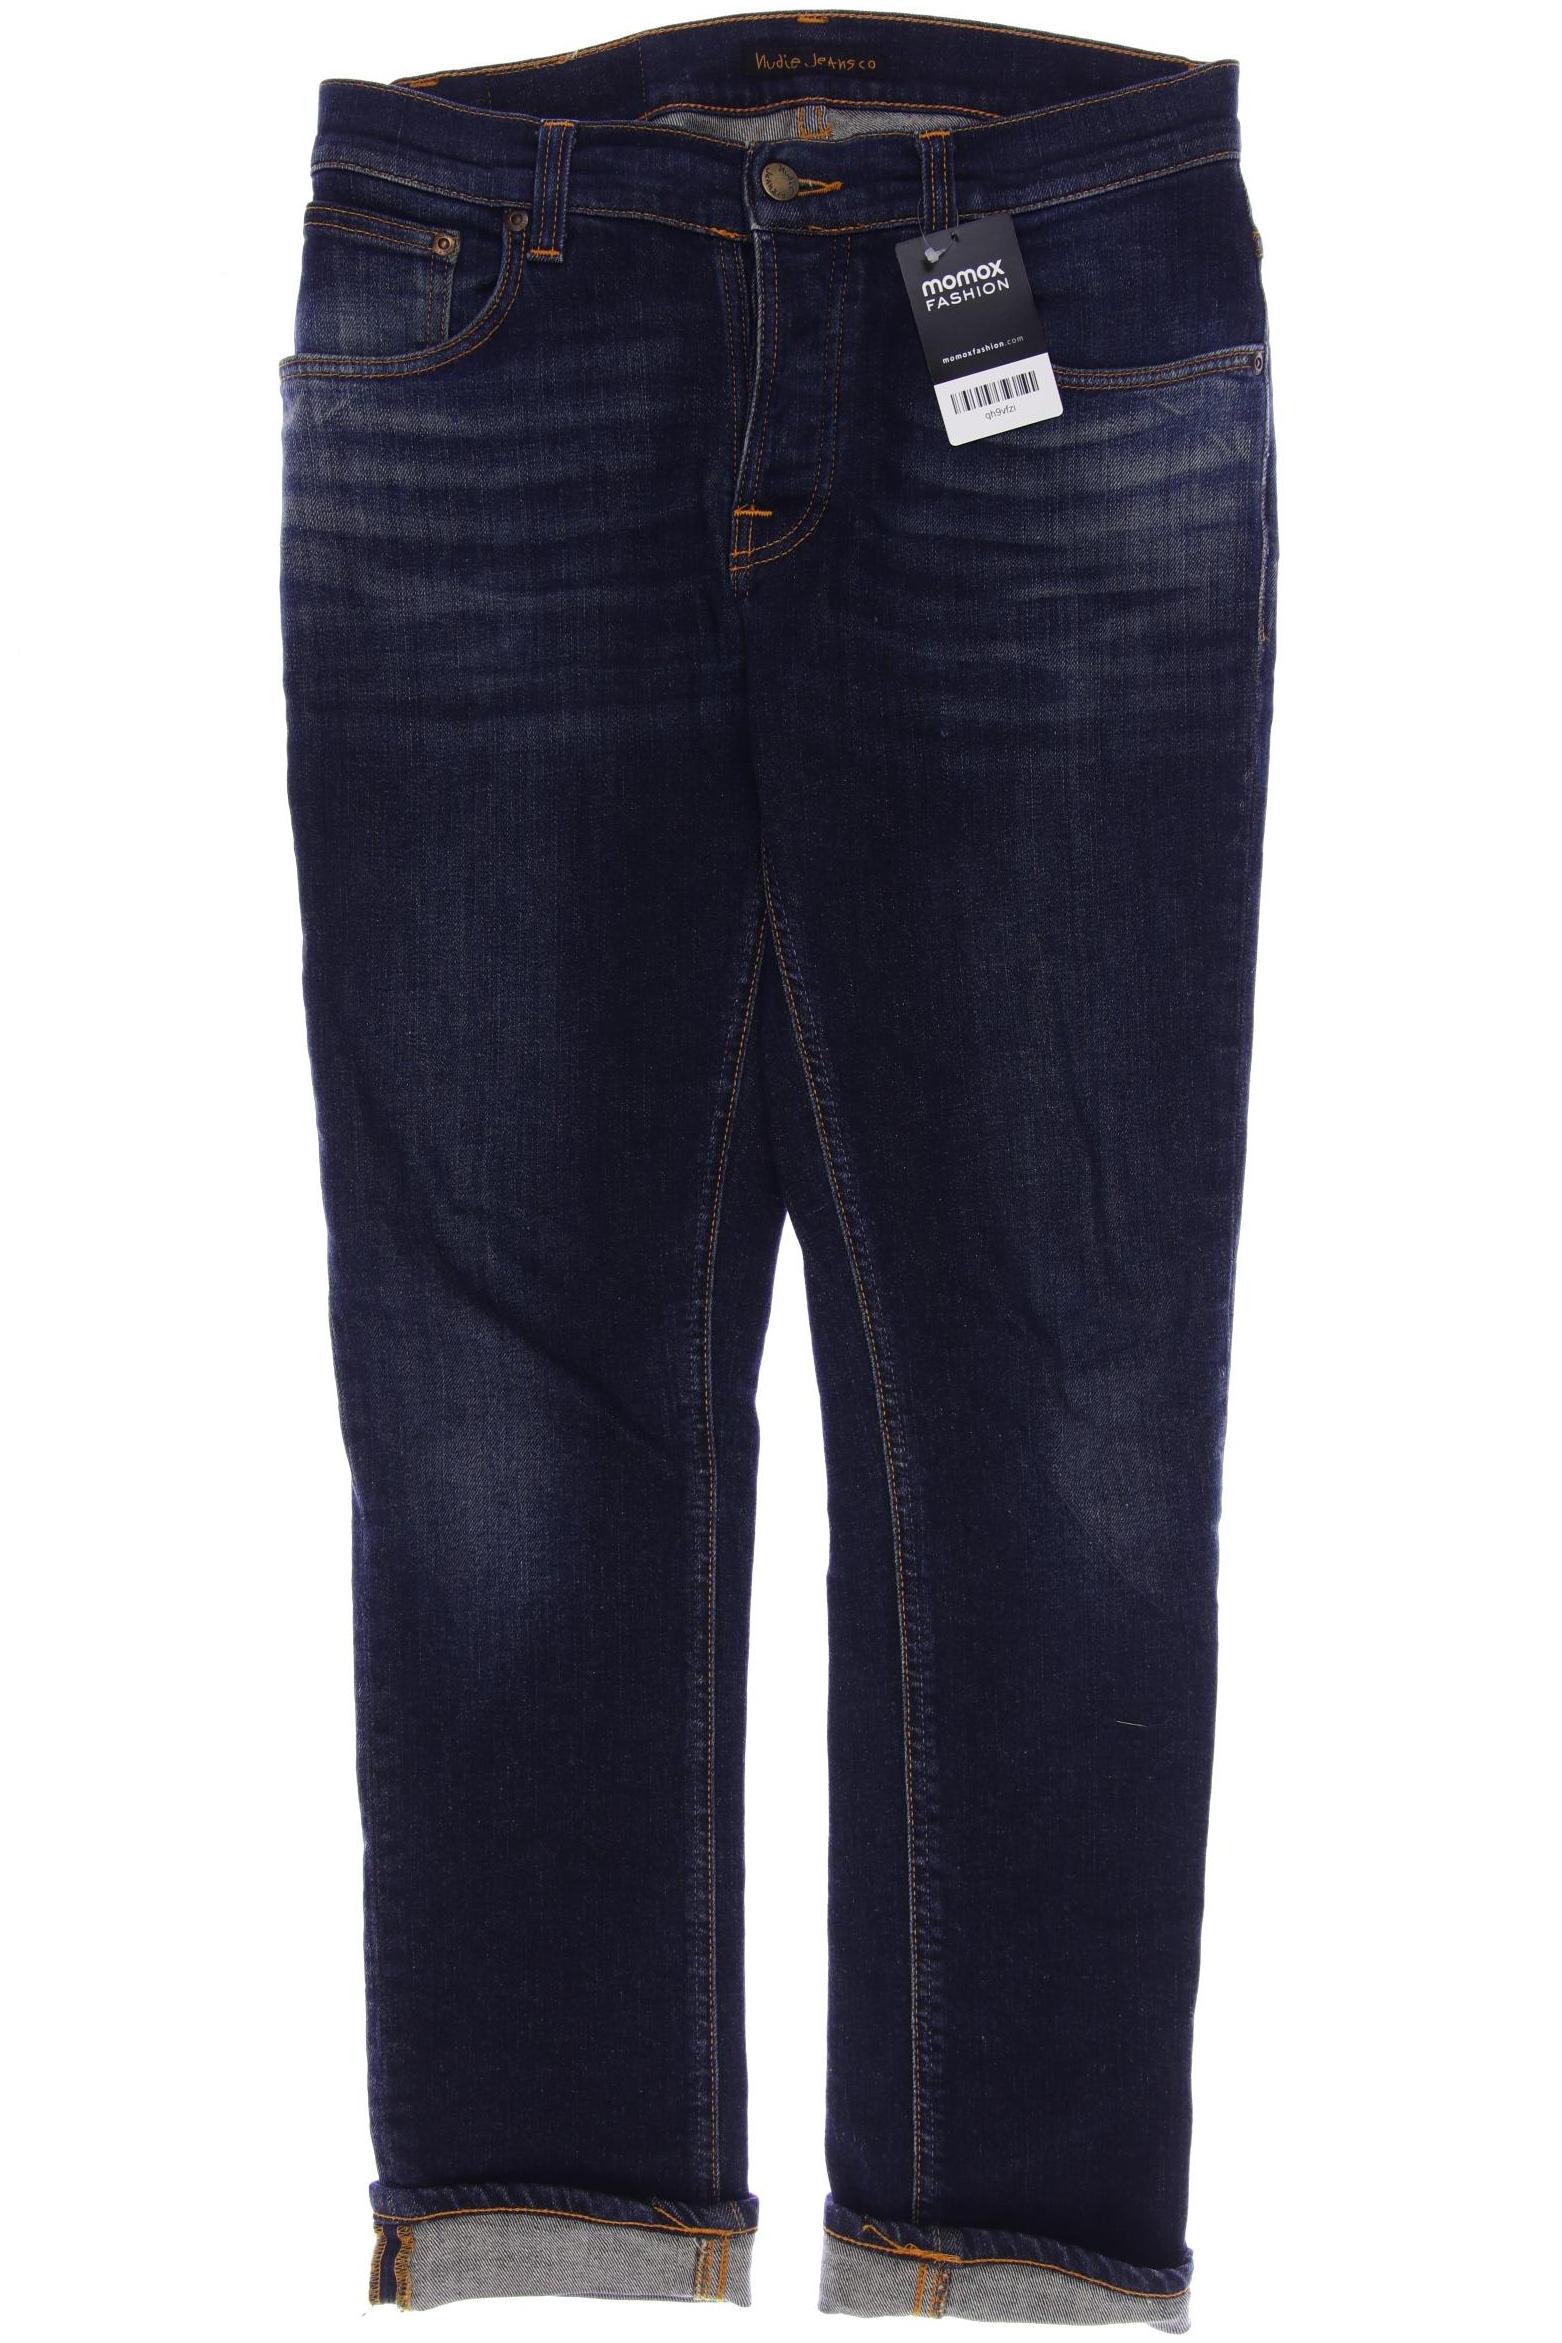 Nudie Jeans Herren Jeans, marineblau, Gr. 46 von Nudie Jeans